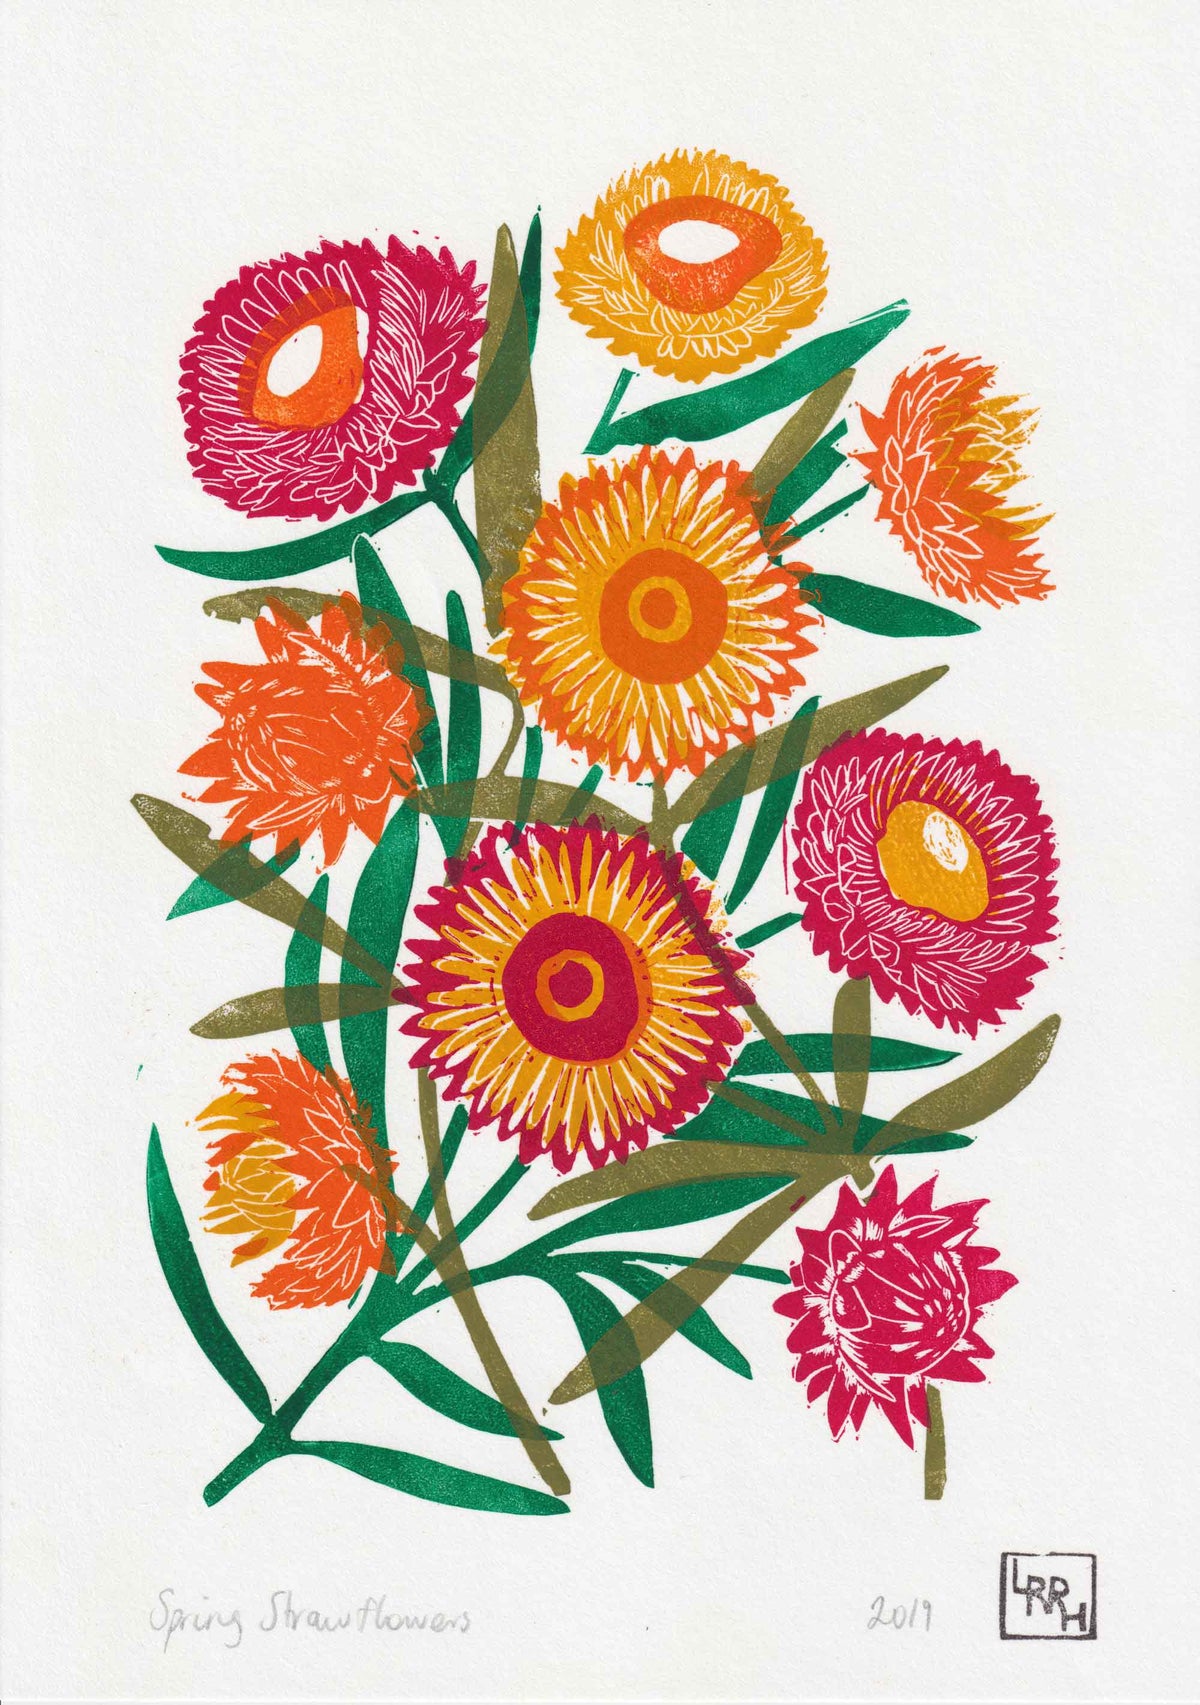 Spring Strawflowers - Original 5 layer Linoprint